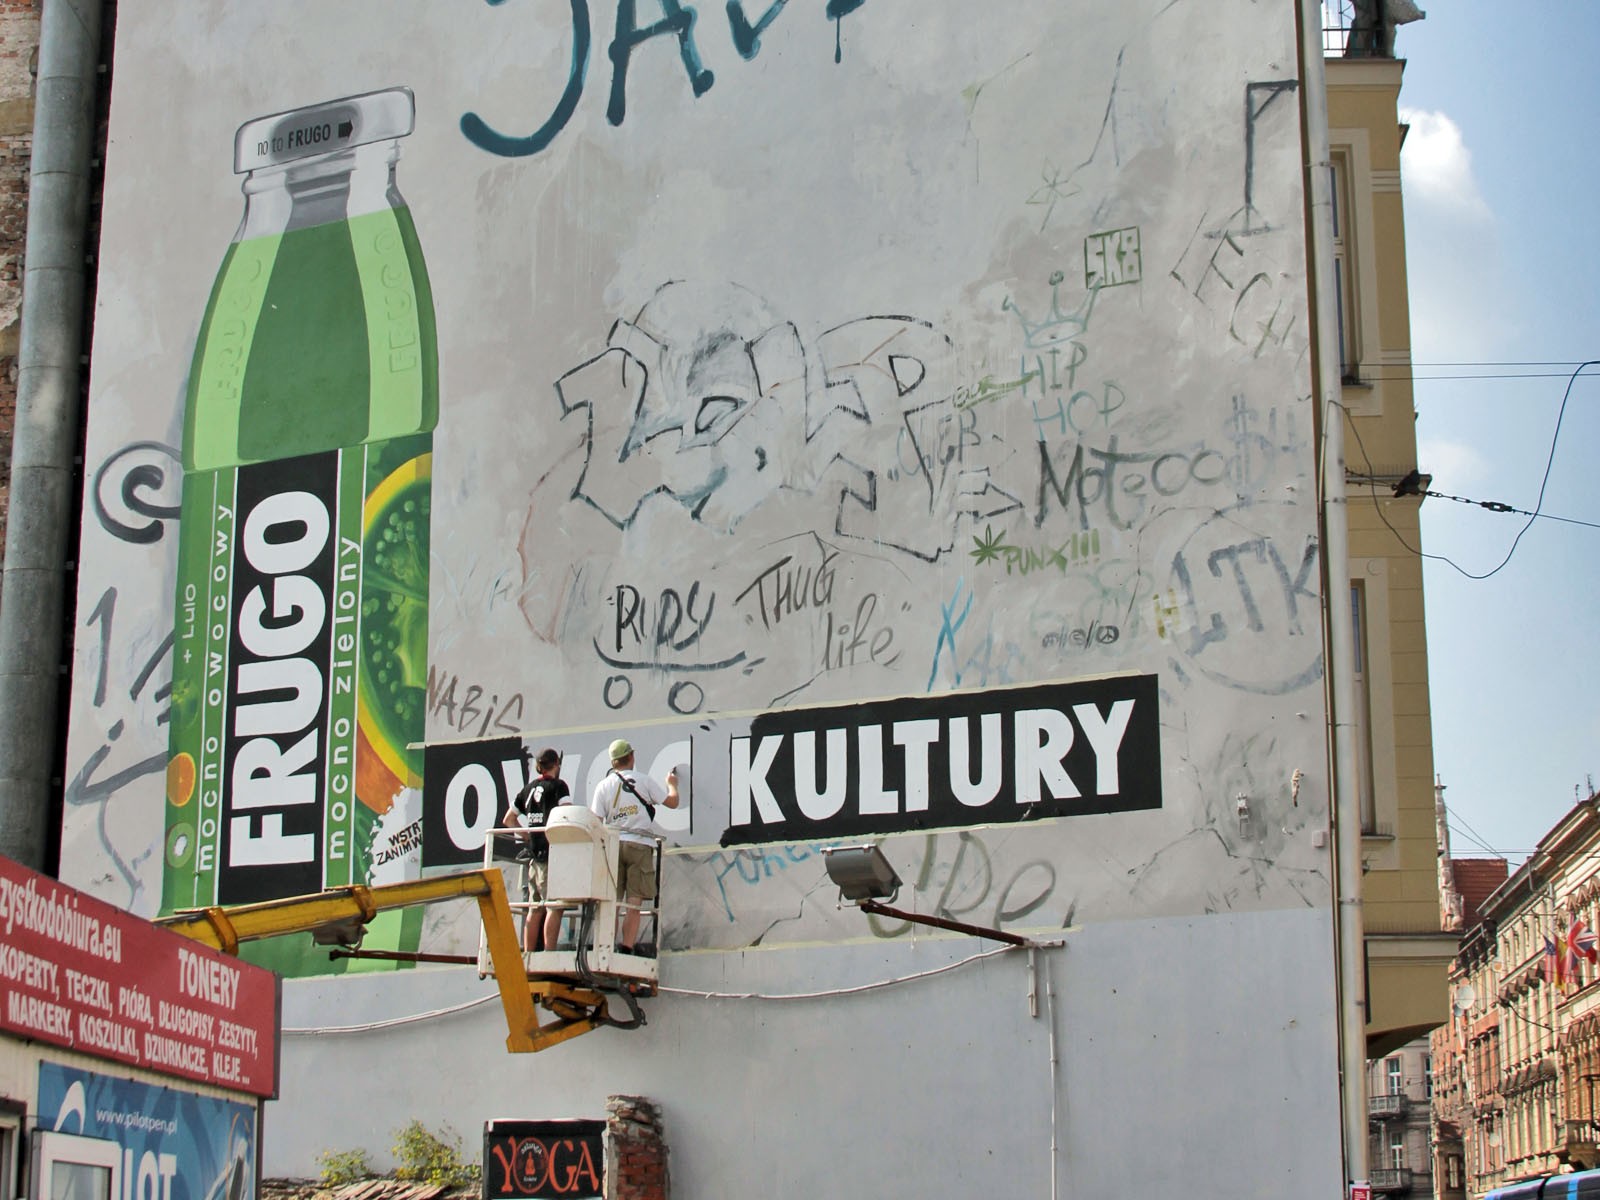 Kampania muralowa Frugo Owoc kultury - Kraków ul. Karmelicka | murale Frugo - kampania Owoc Kultury | Portfolio